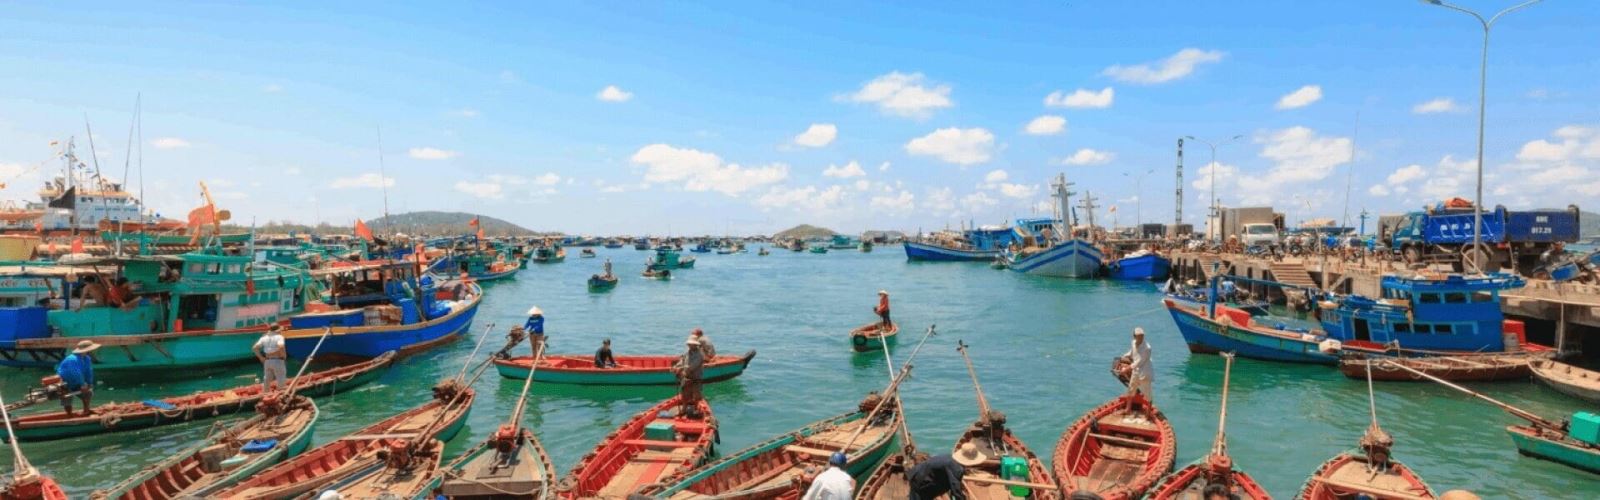 Villaggio dei pescatori di Ham Ninh